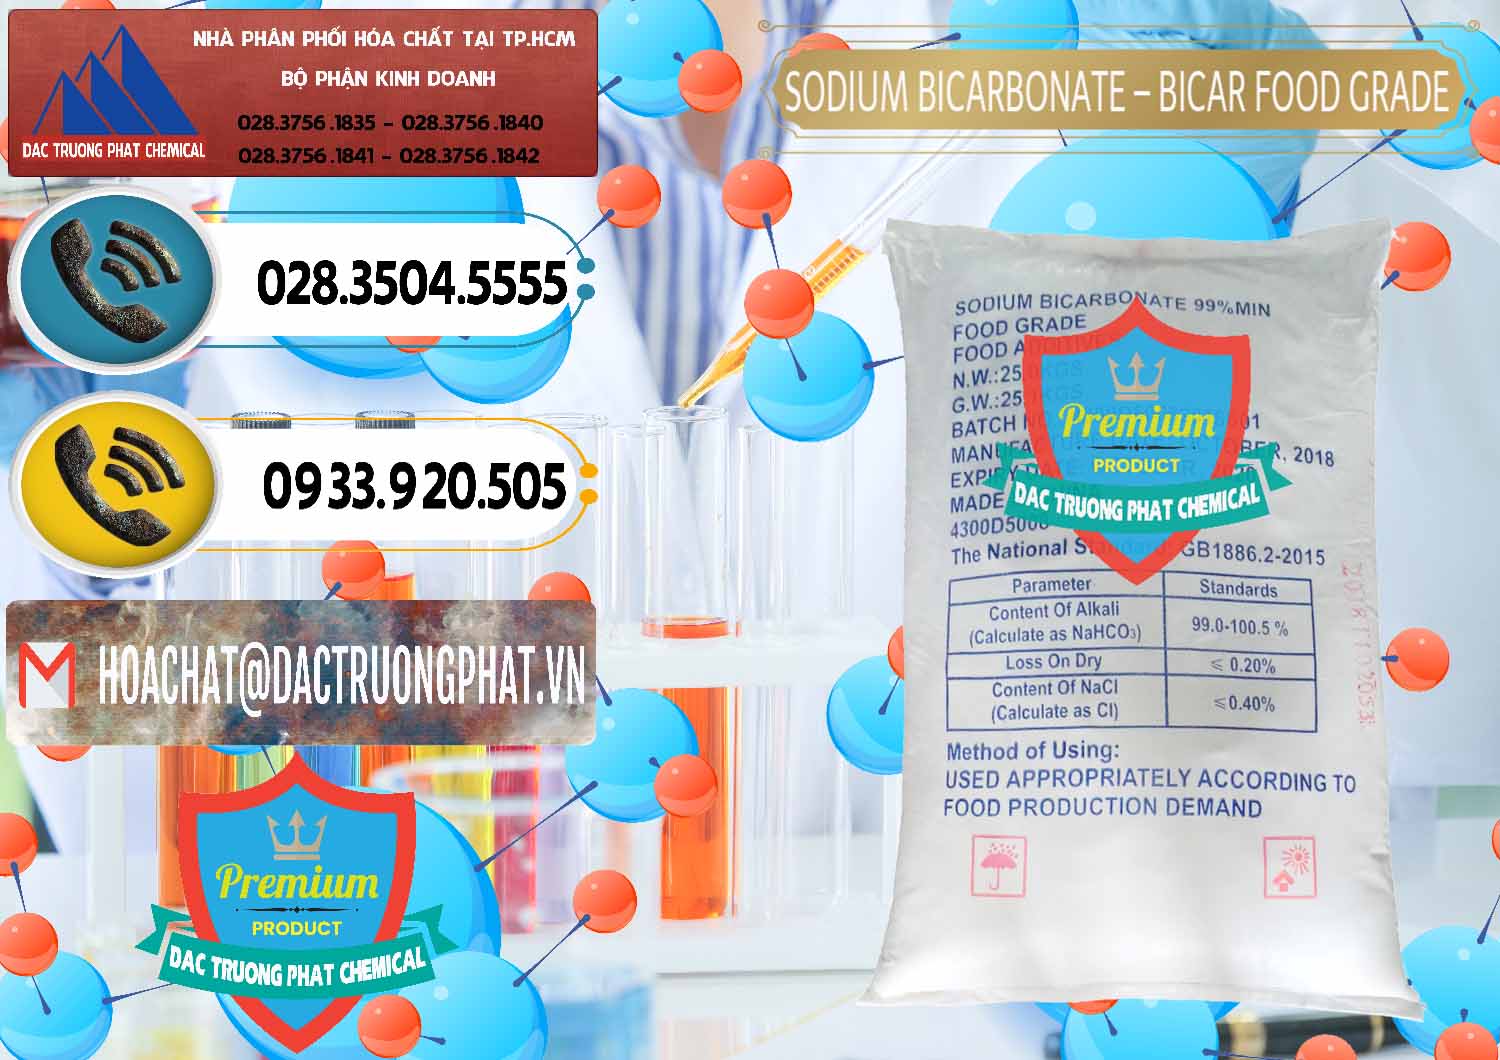 Chuyên cung cấp _ bán Sodium Bicarbonate – Bicar NaHCO3 Food Grade Trung Quốc China - 0138 - Nơi bán và cung cấp hóa chất tại TP.HCM - hoachatdetnhuom.vn